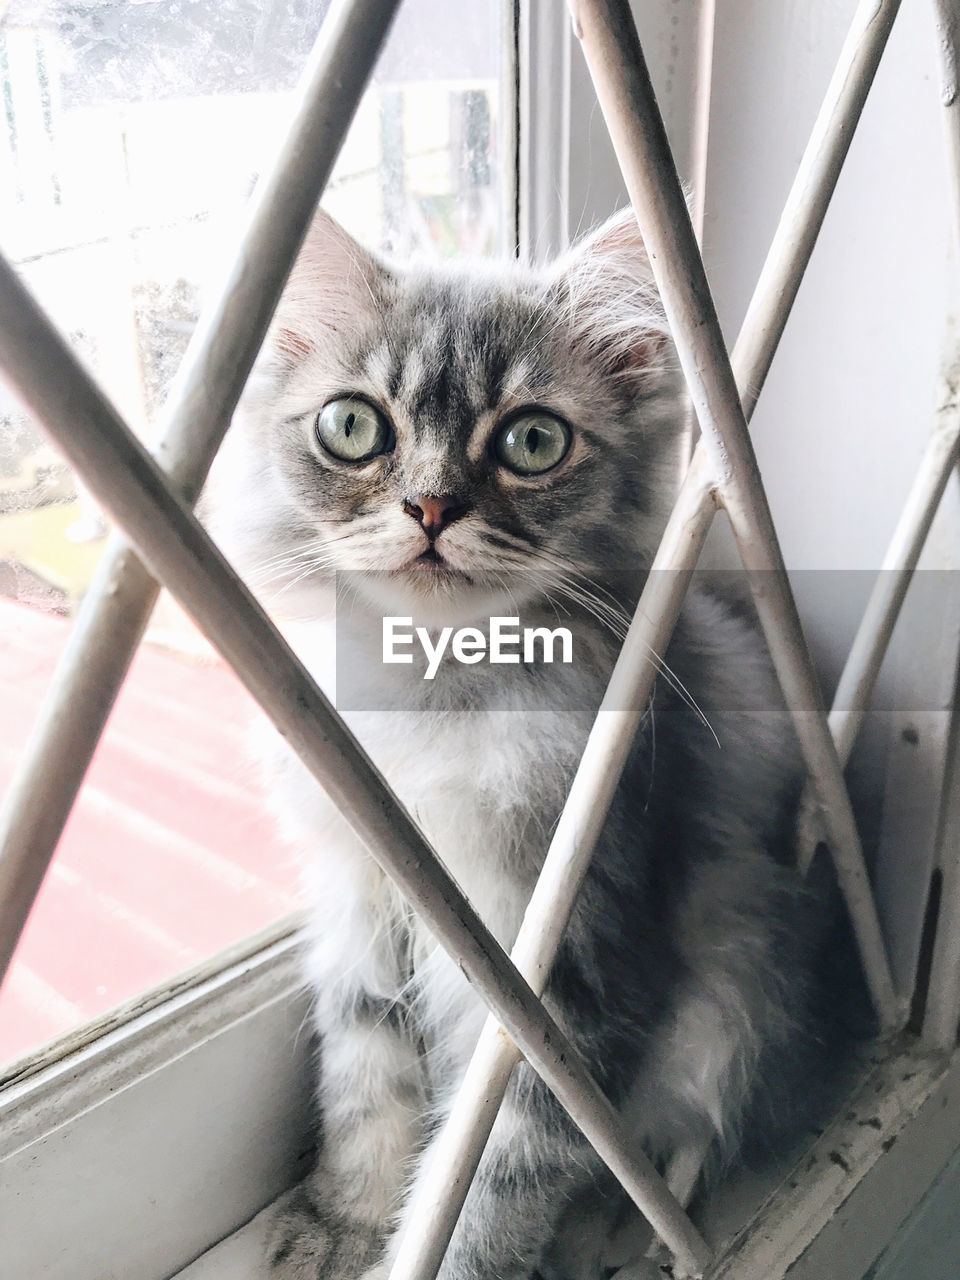 Portrait of cat seen through metal